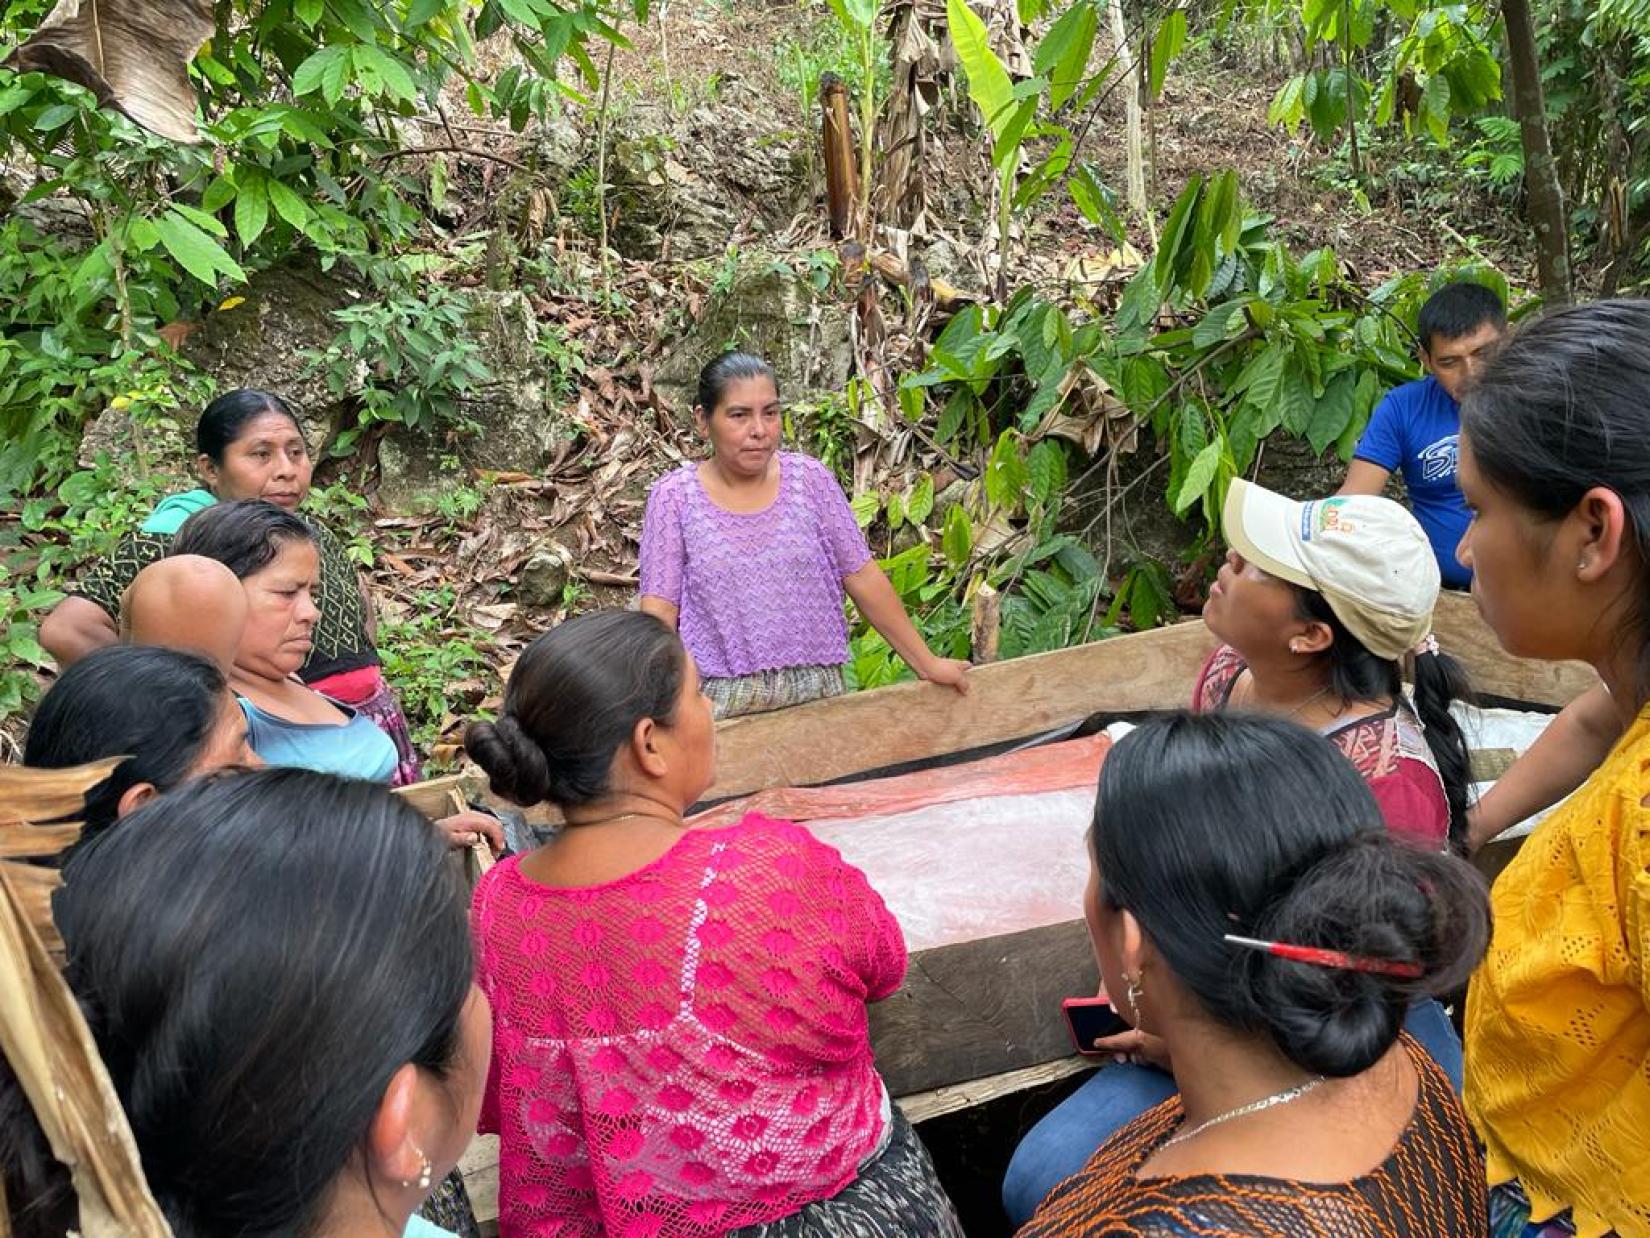 María Chomo, al centro, pertenece a uno de los grupos de mujeres que ya realizan trabajos de preparación agrícola. Foto WFP GT